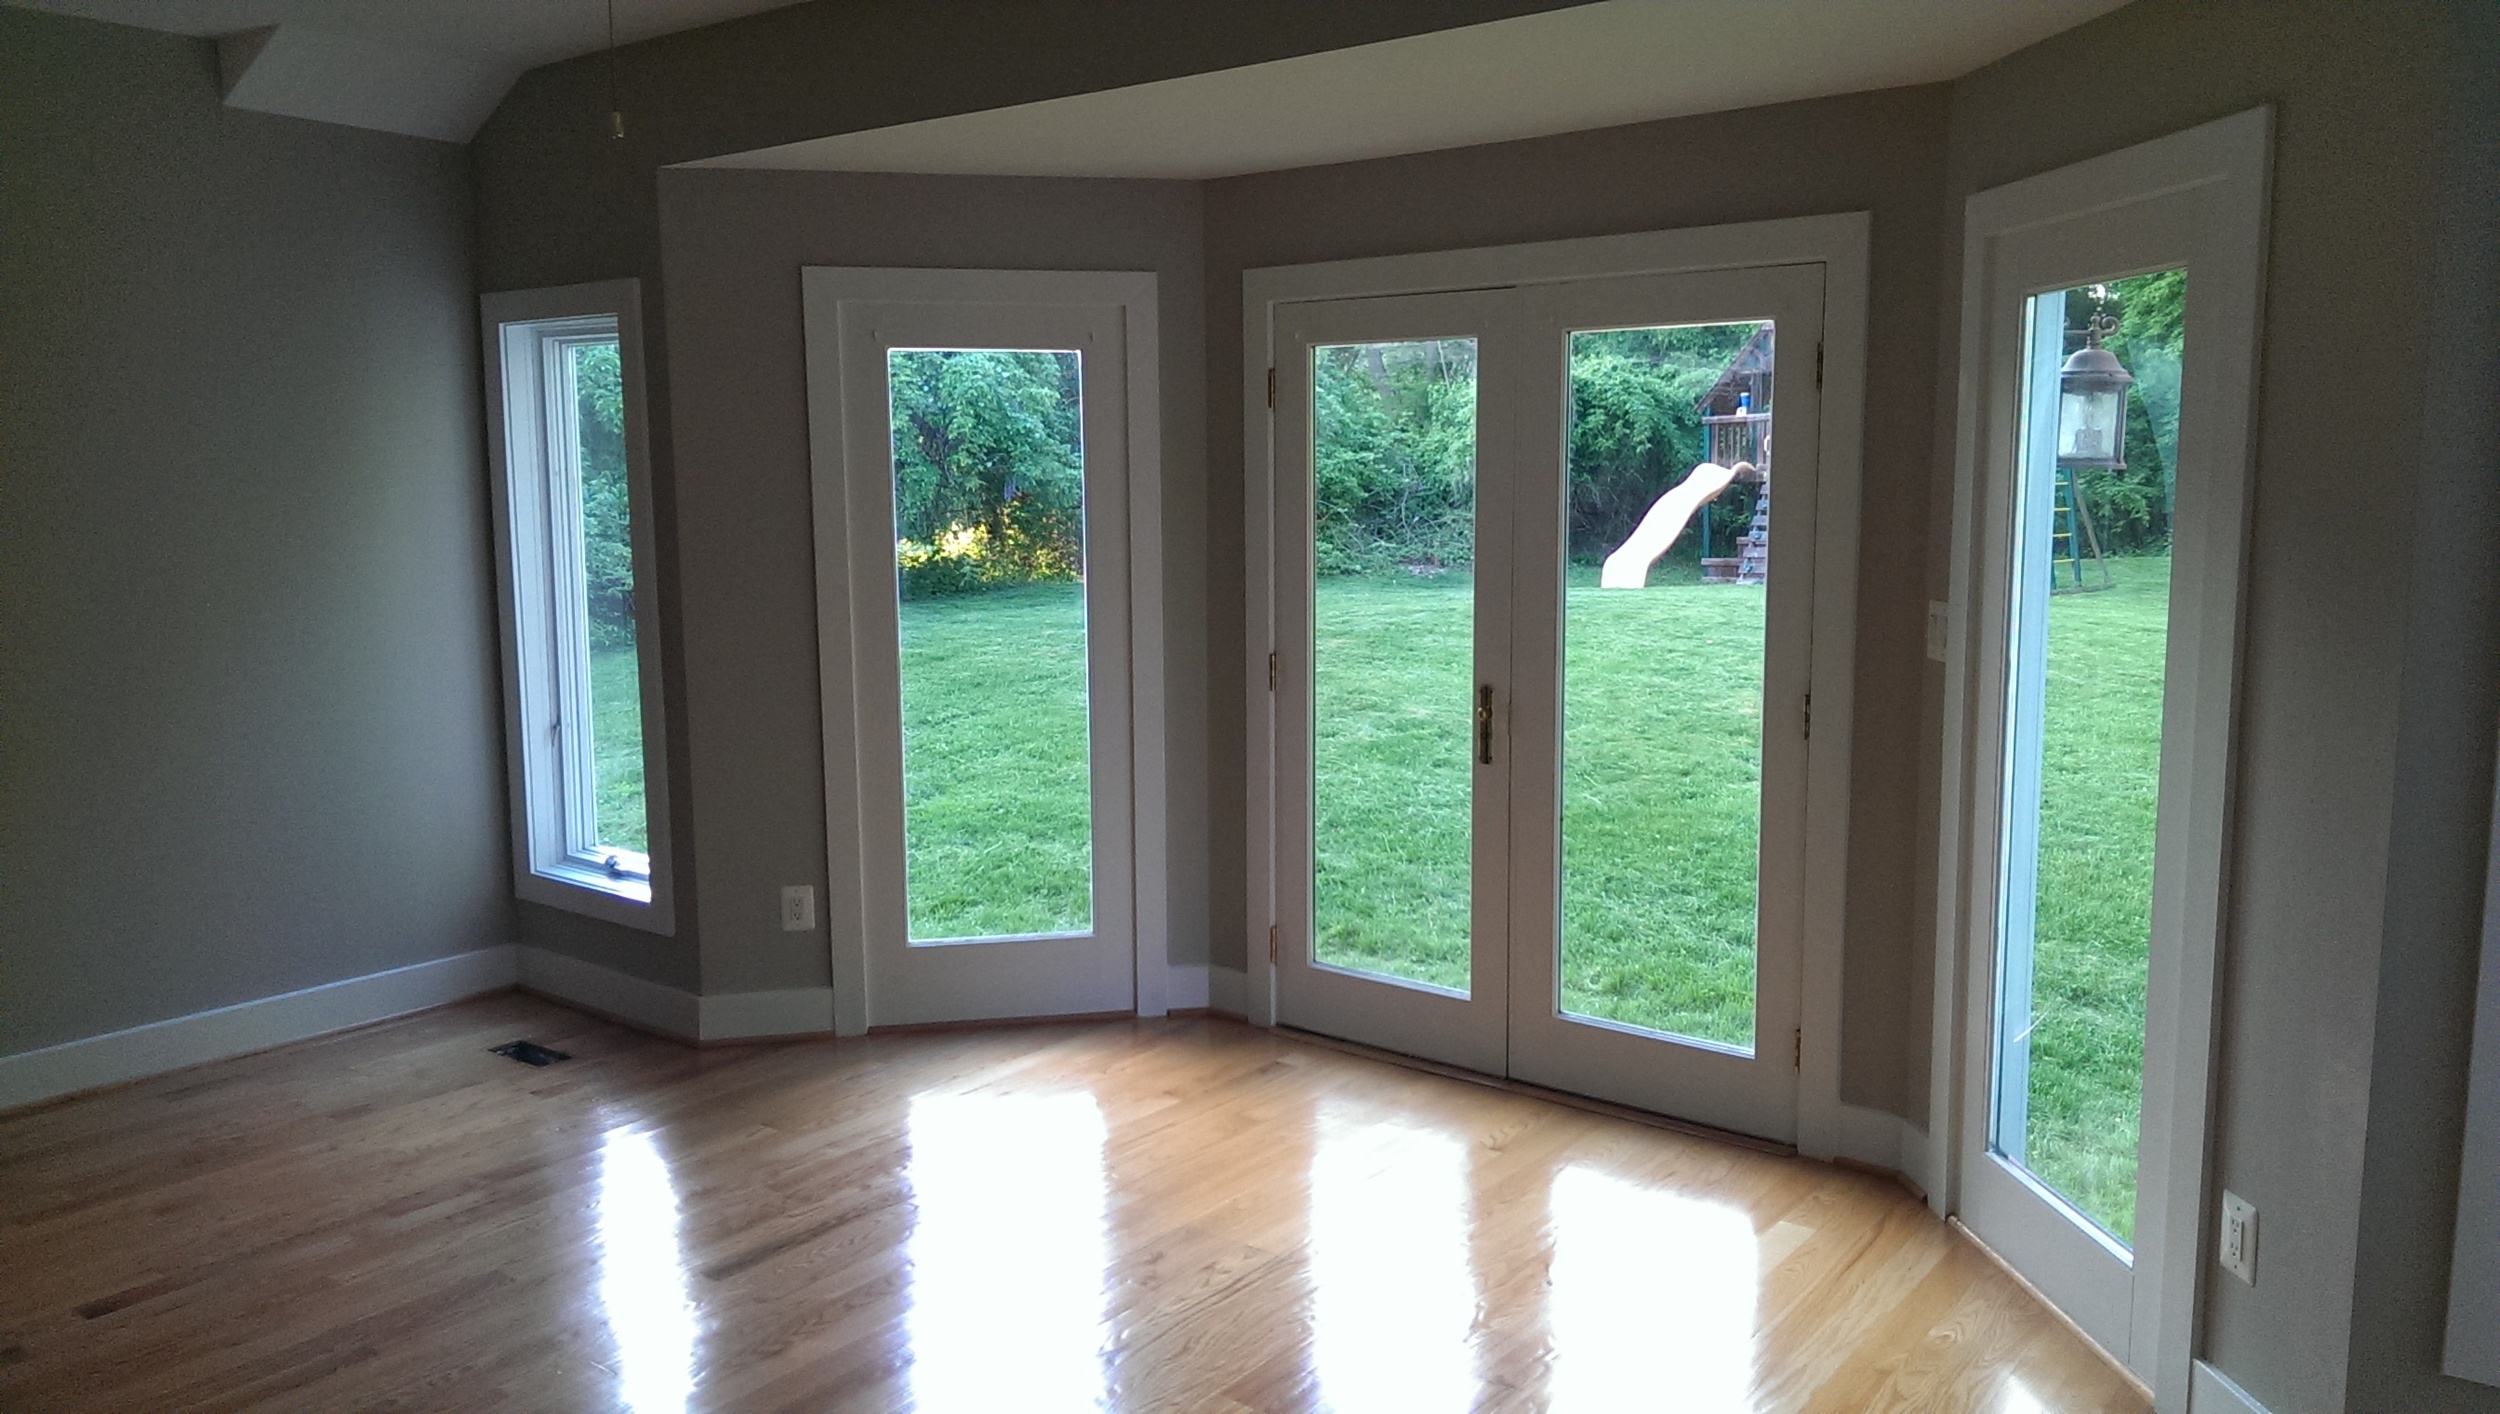 We locate all window and door openings including door heights, floor to window sill and window heights.